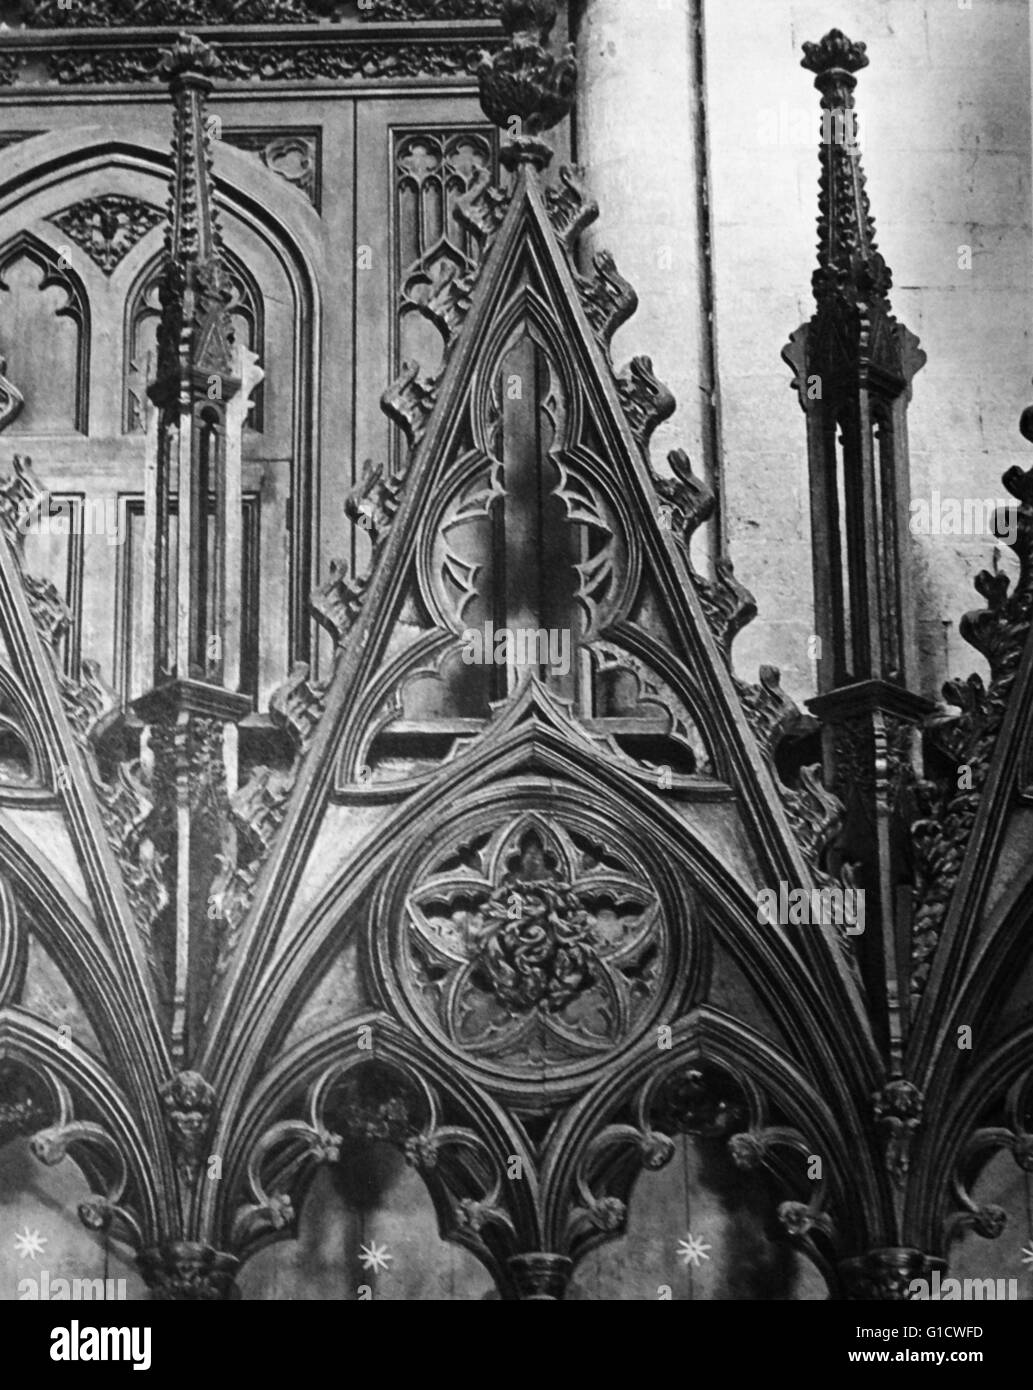 Stampa fotografica che mostra il dettaglio di una delle tettoie in gli stalli del coro della cattedrale di Winchester, una chiesa di Inghilterra nella cattedrale di Winchester. Foto Stock